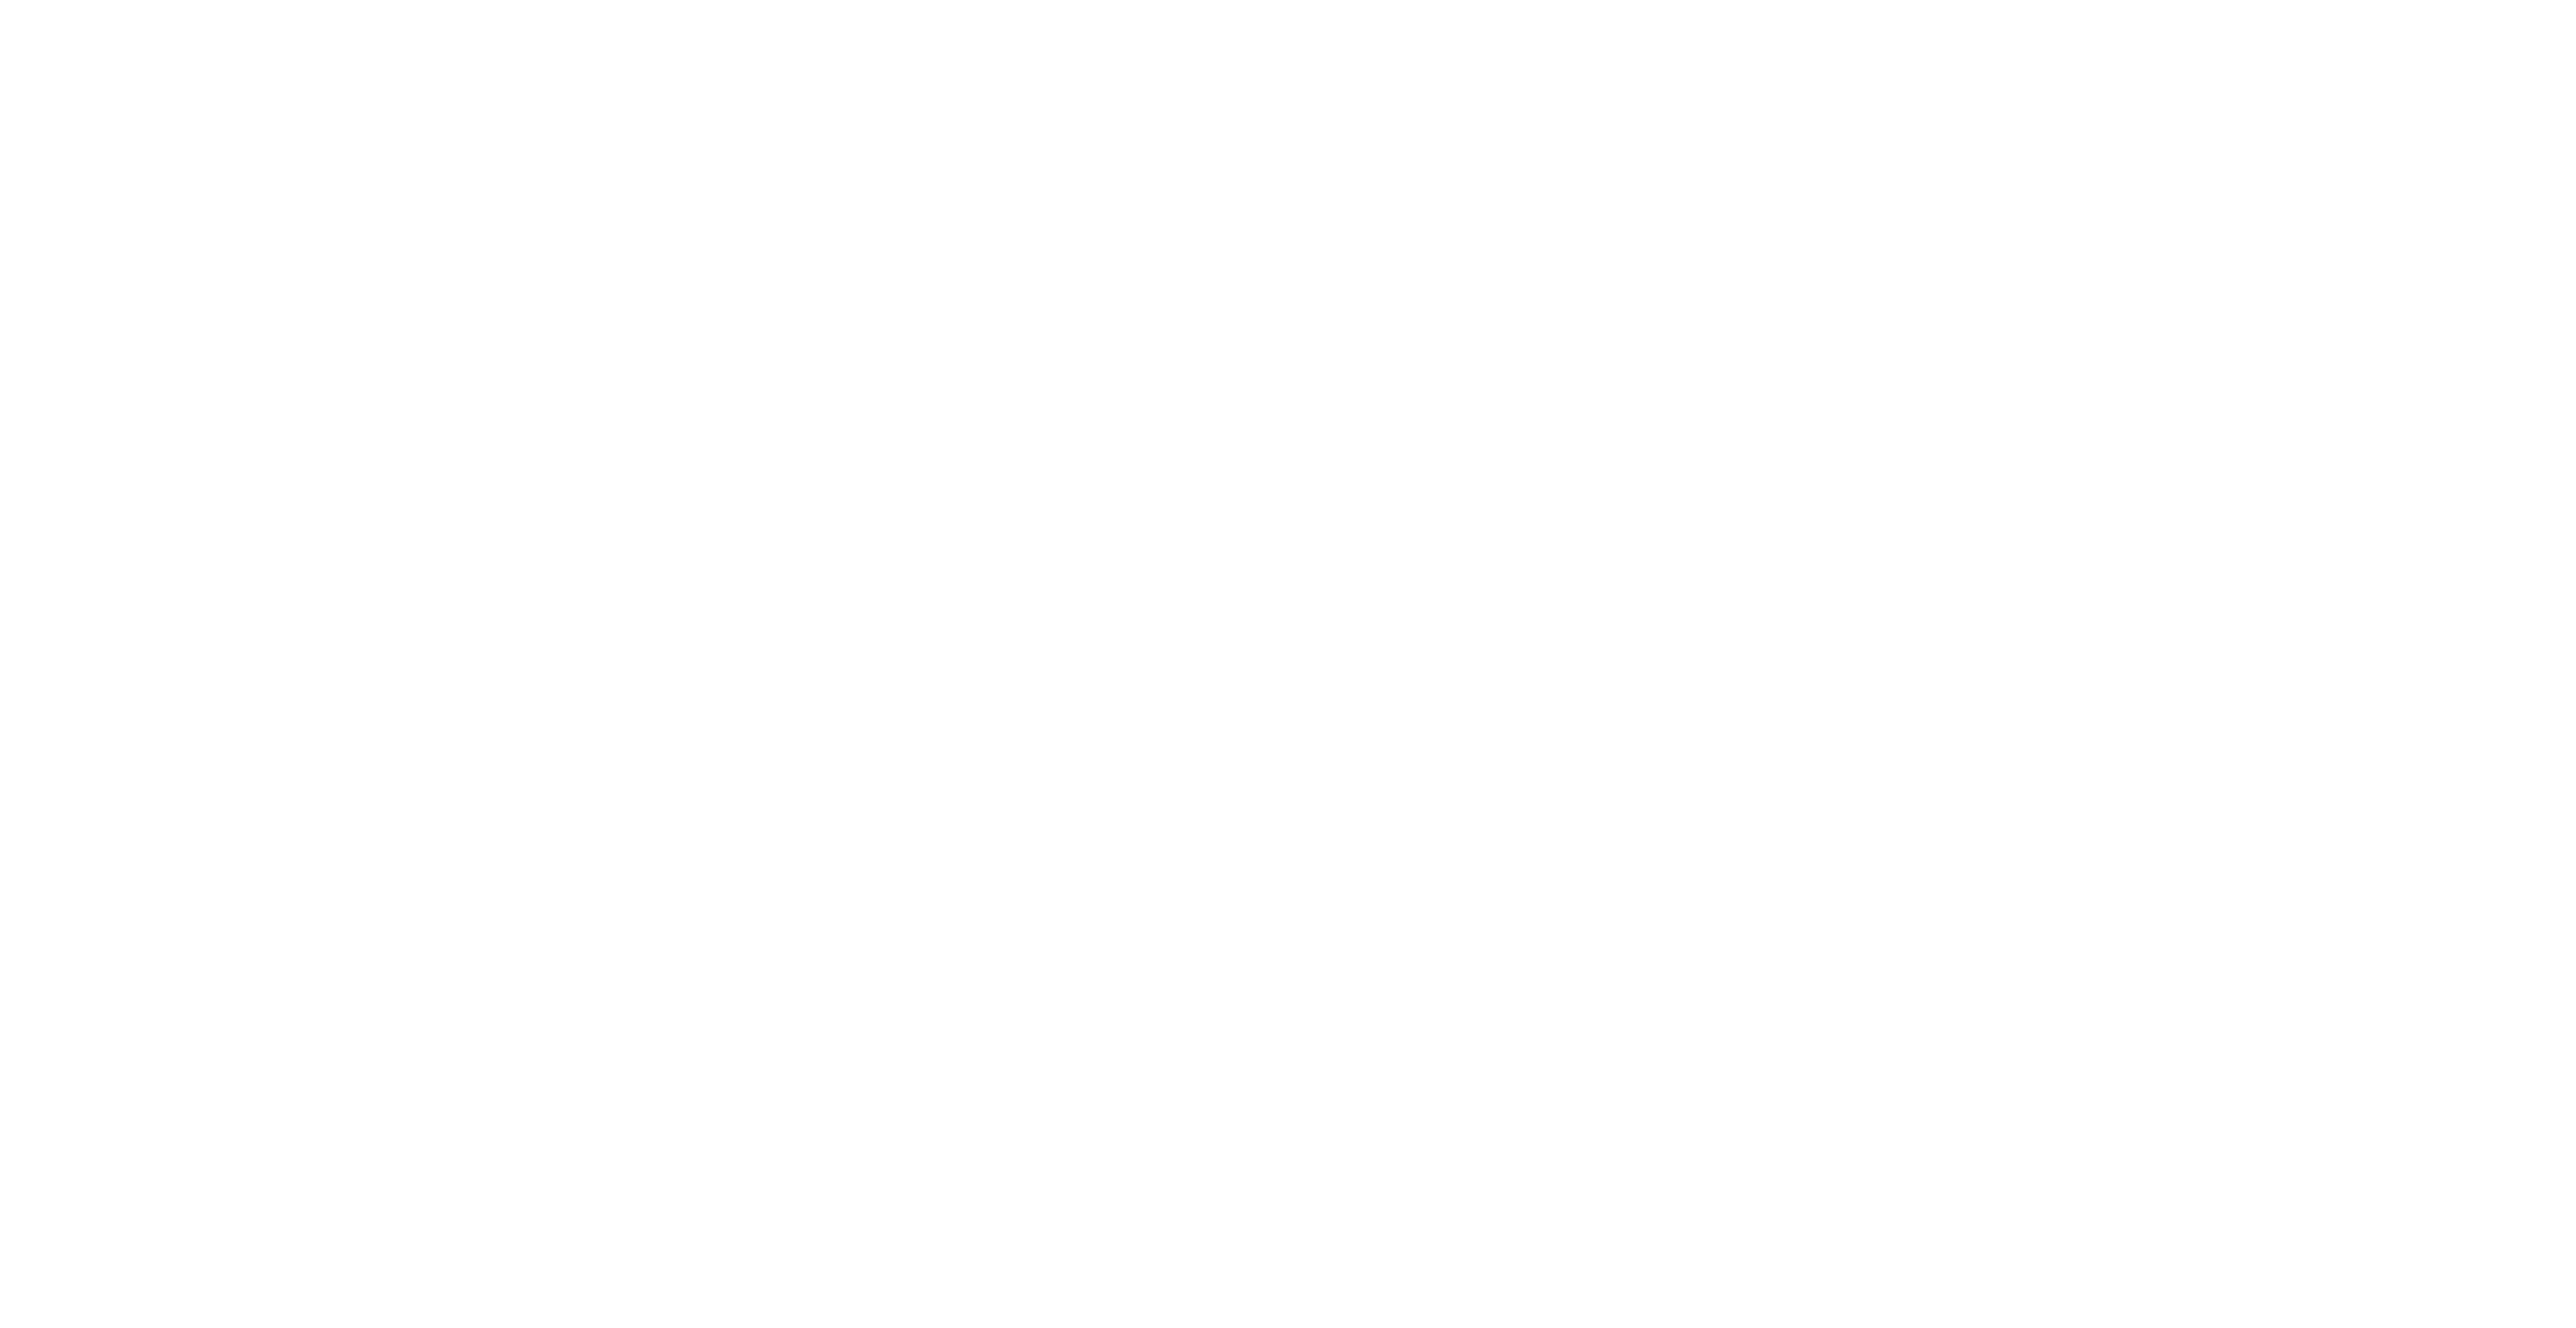 UNBOUND Gravel